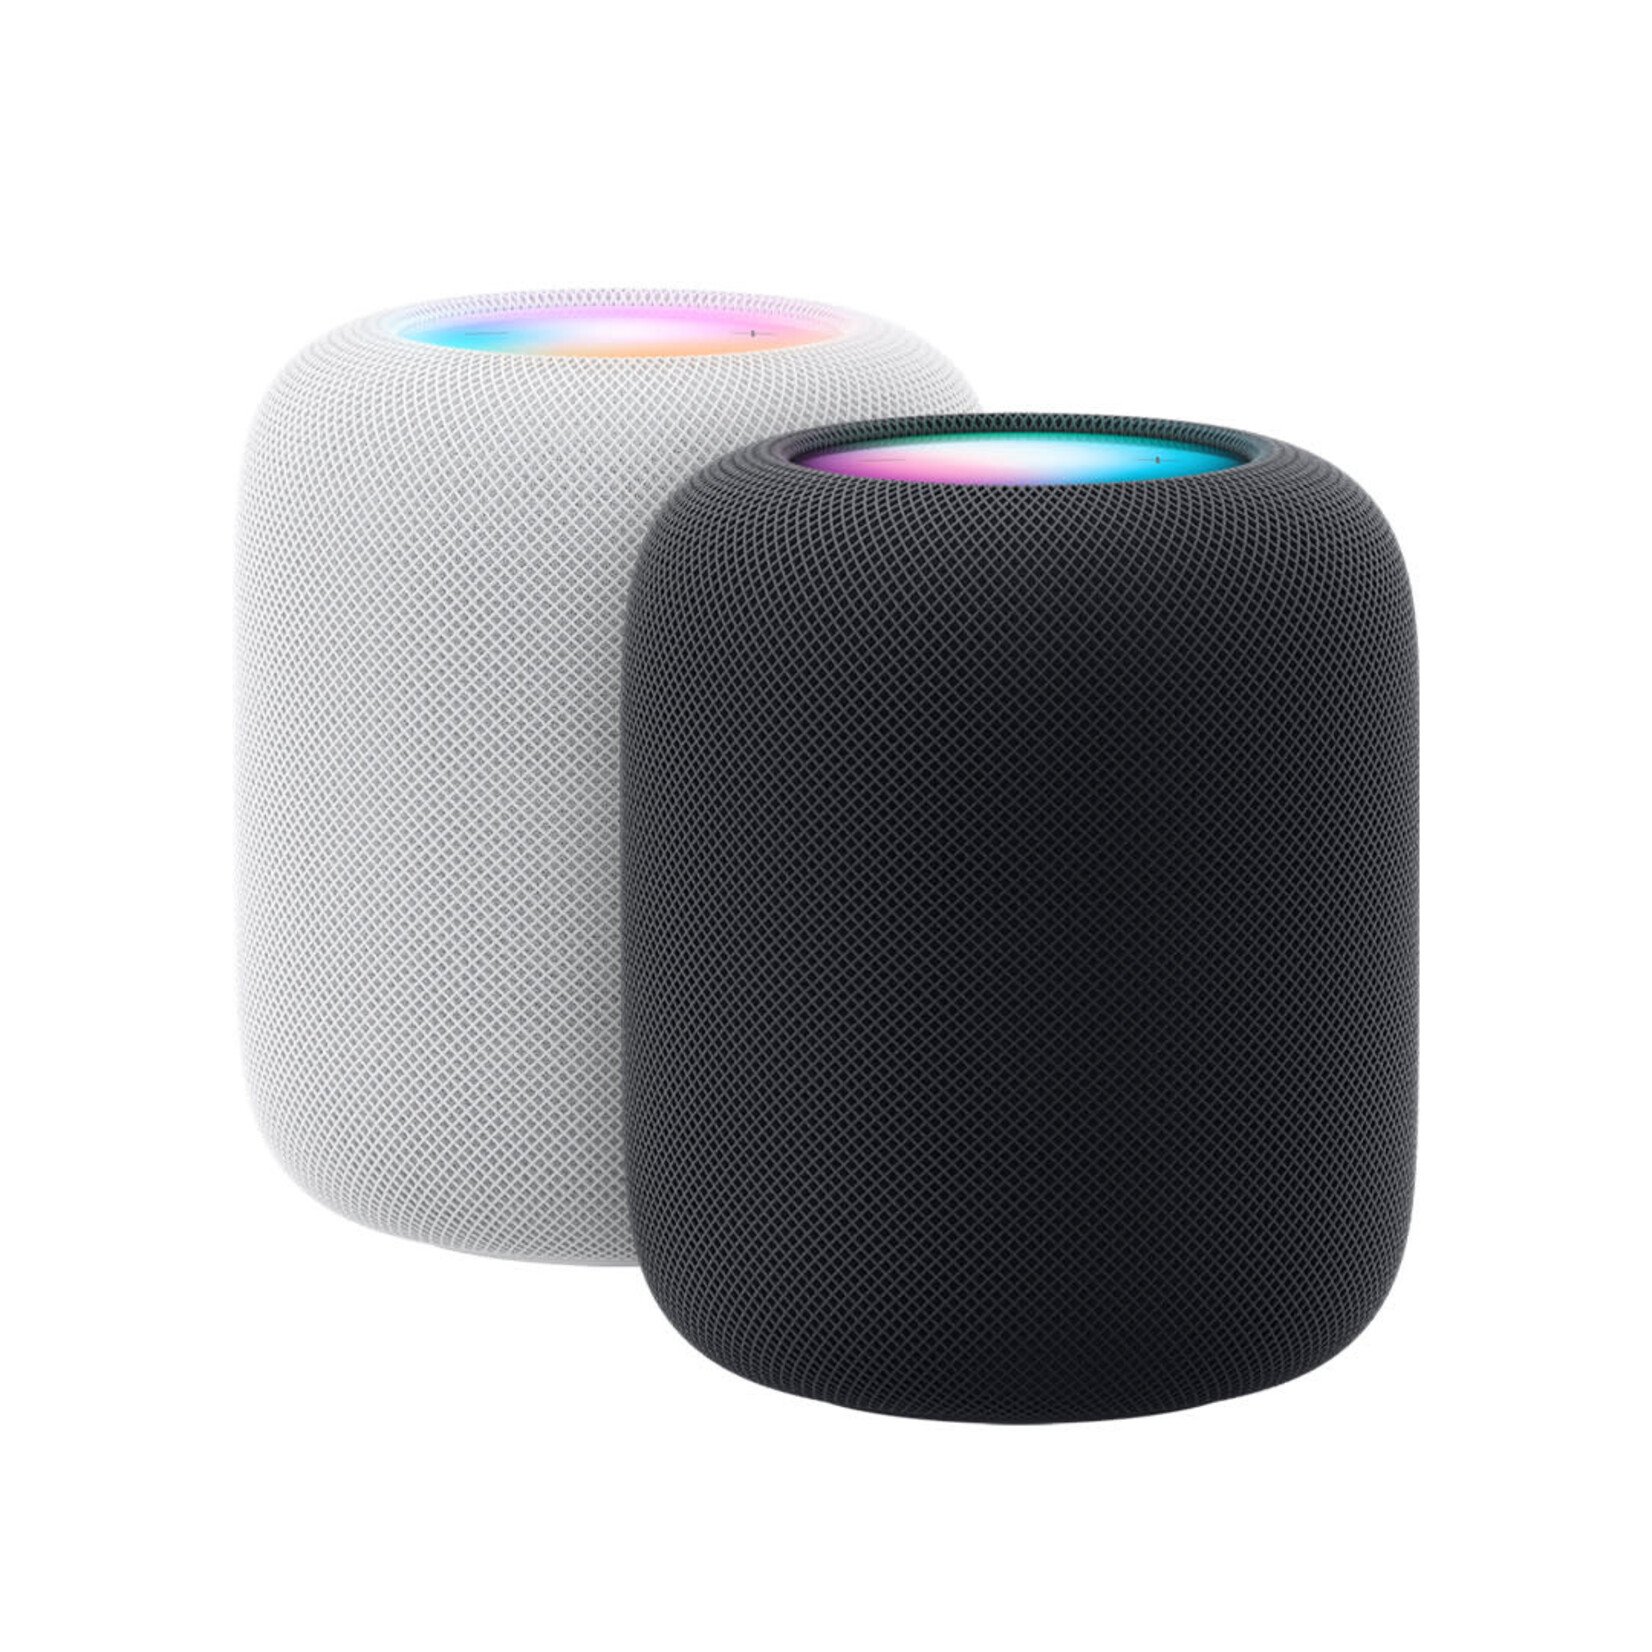 今月のお買得品 Apple homepod ホワイト - オーディオ機器